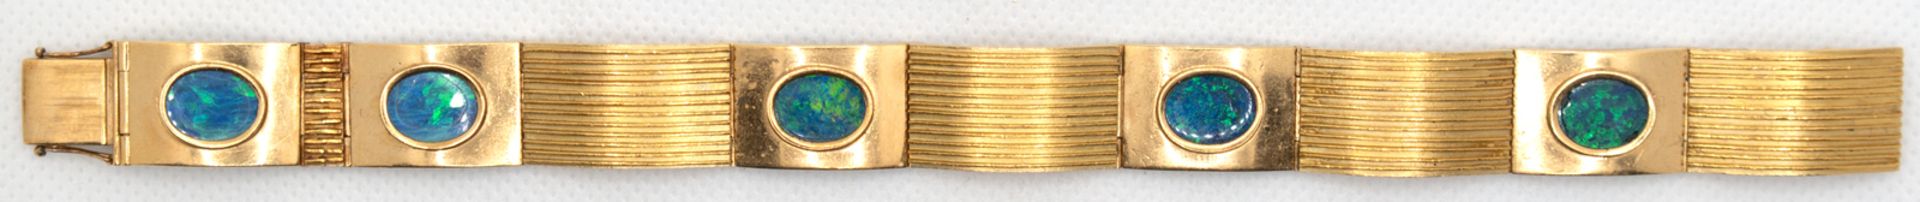 Gliederarmband, 750er GG, besetzt mit 5 ovalen Opalen, Glieder z.T. mit Streifendekor, 